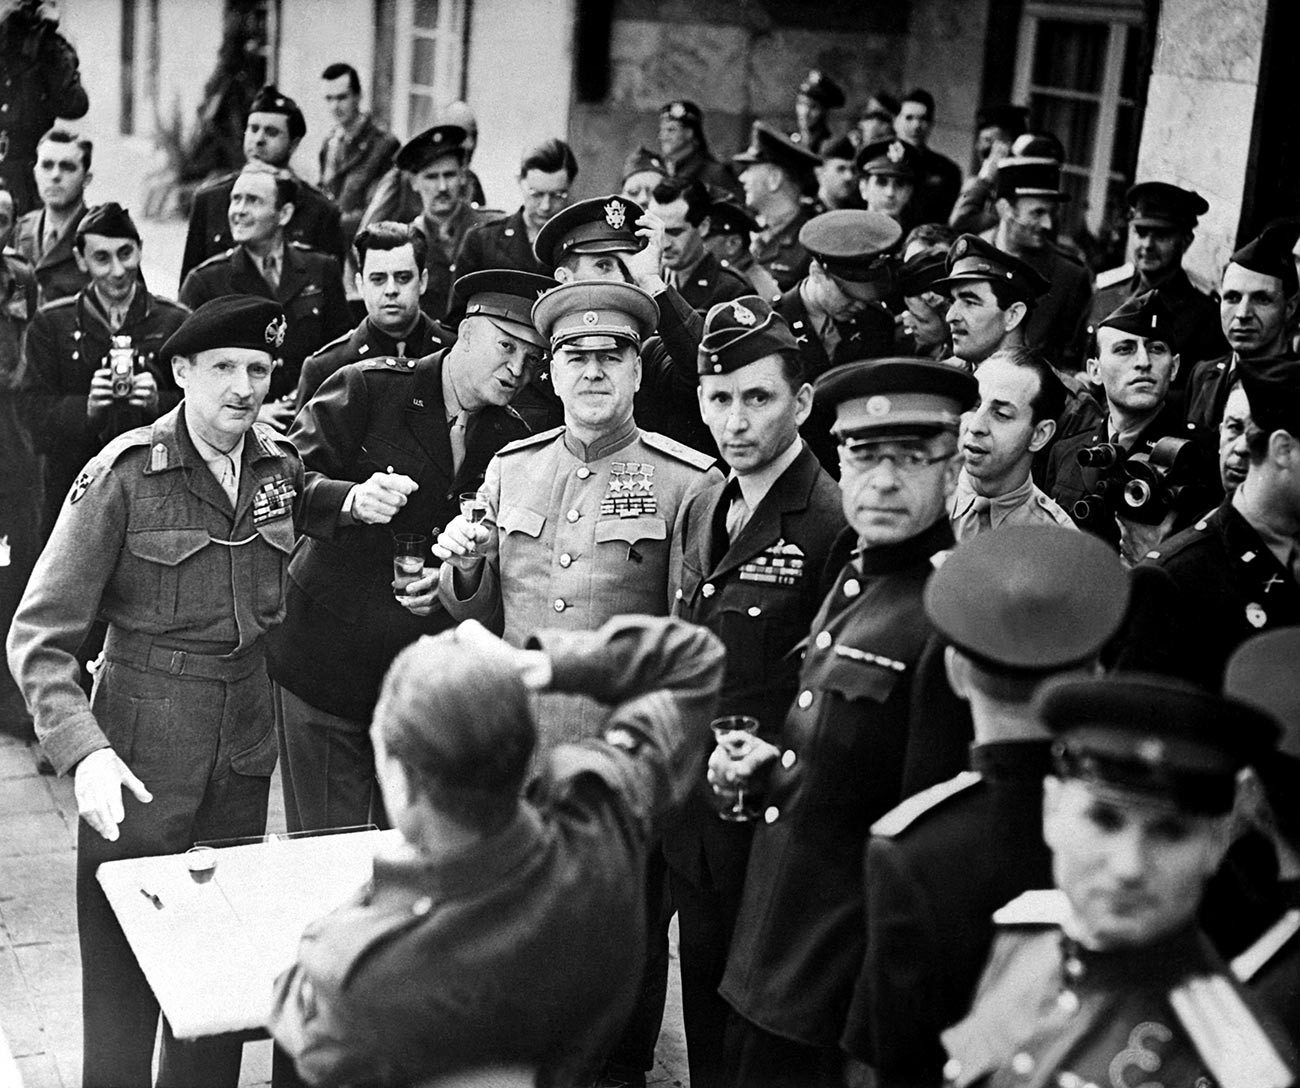 Der britische Generalfeldmarschall Bernard Montgomery wurde am 5. Juni 1945 mit dem Siegesorden ausgezeichnet.